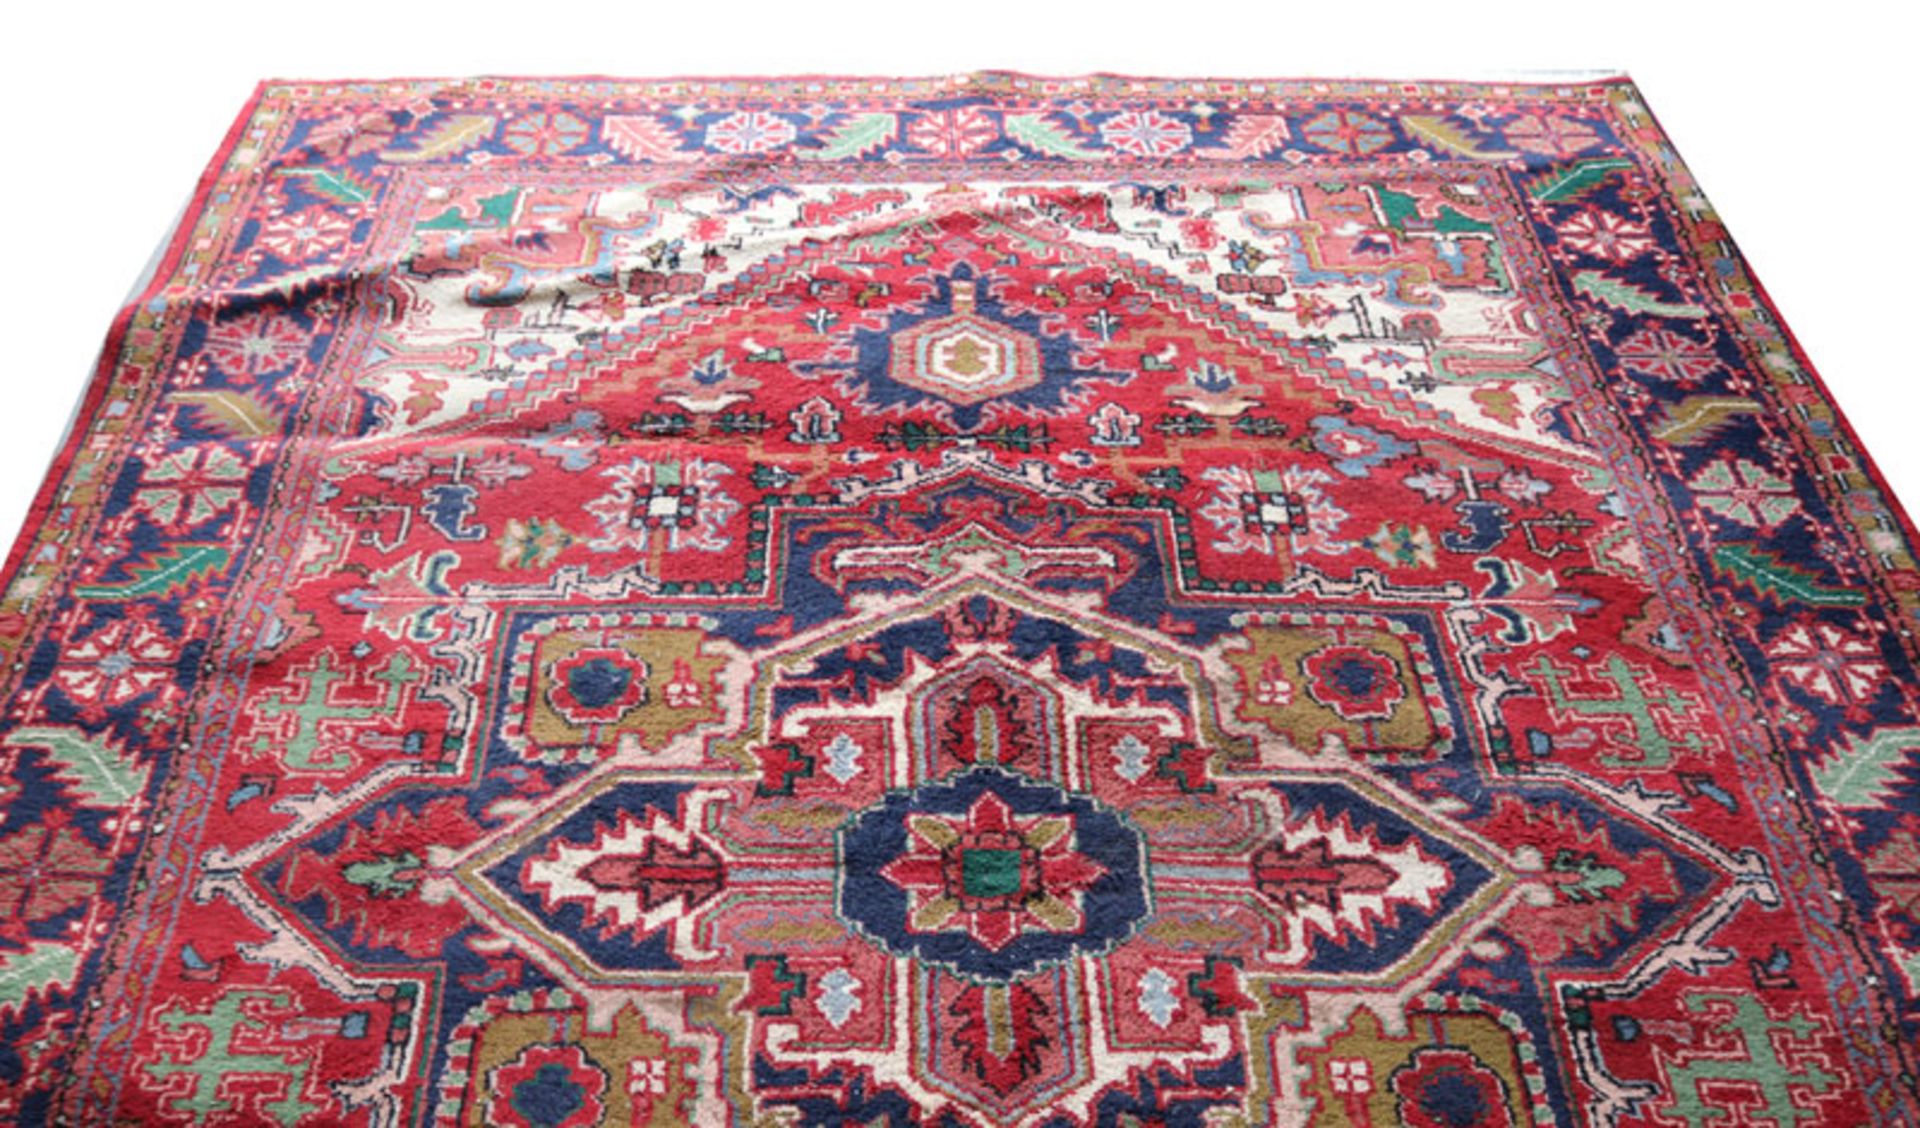 Teppich, Heriz, rot/blau/bunt, teils fleckig, Gebrauchsspuren, 347 cm x 248 cm